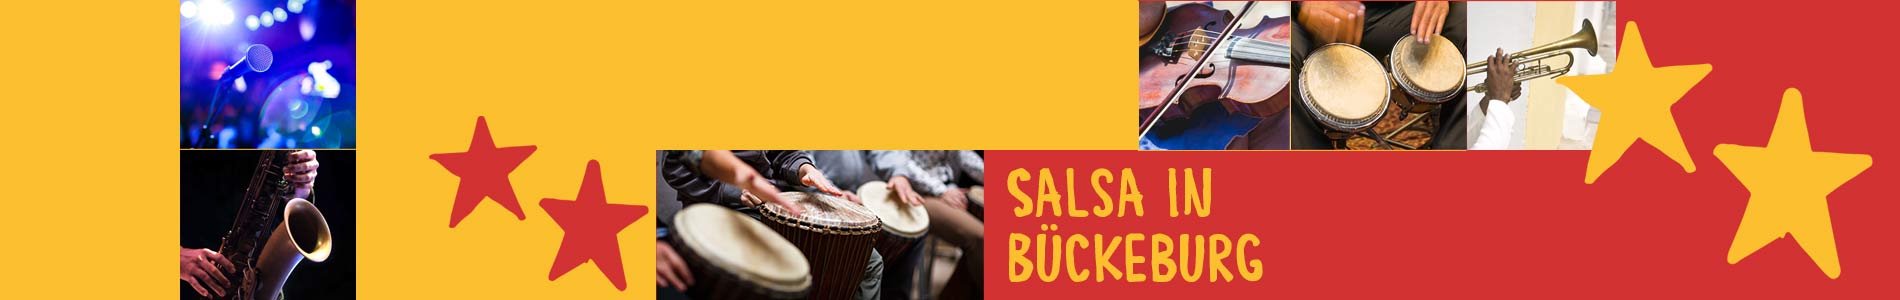 Salsa in Bückeburg – Salsa lernen und tanzen, Tanzkurse, Partys, Veranstaltungen